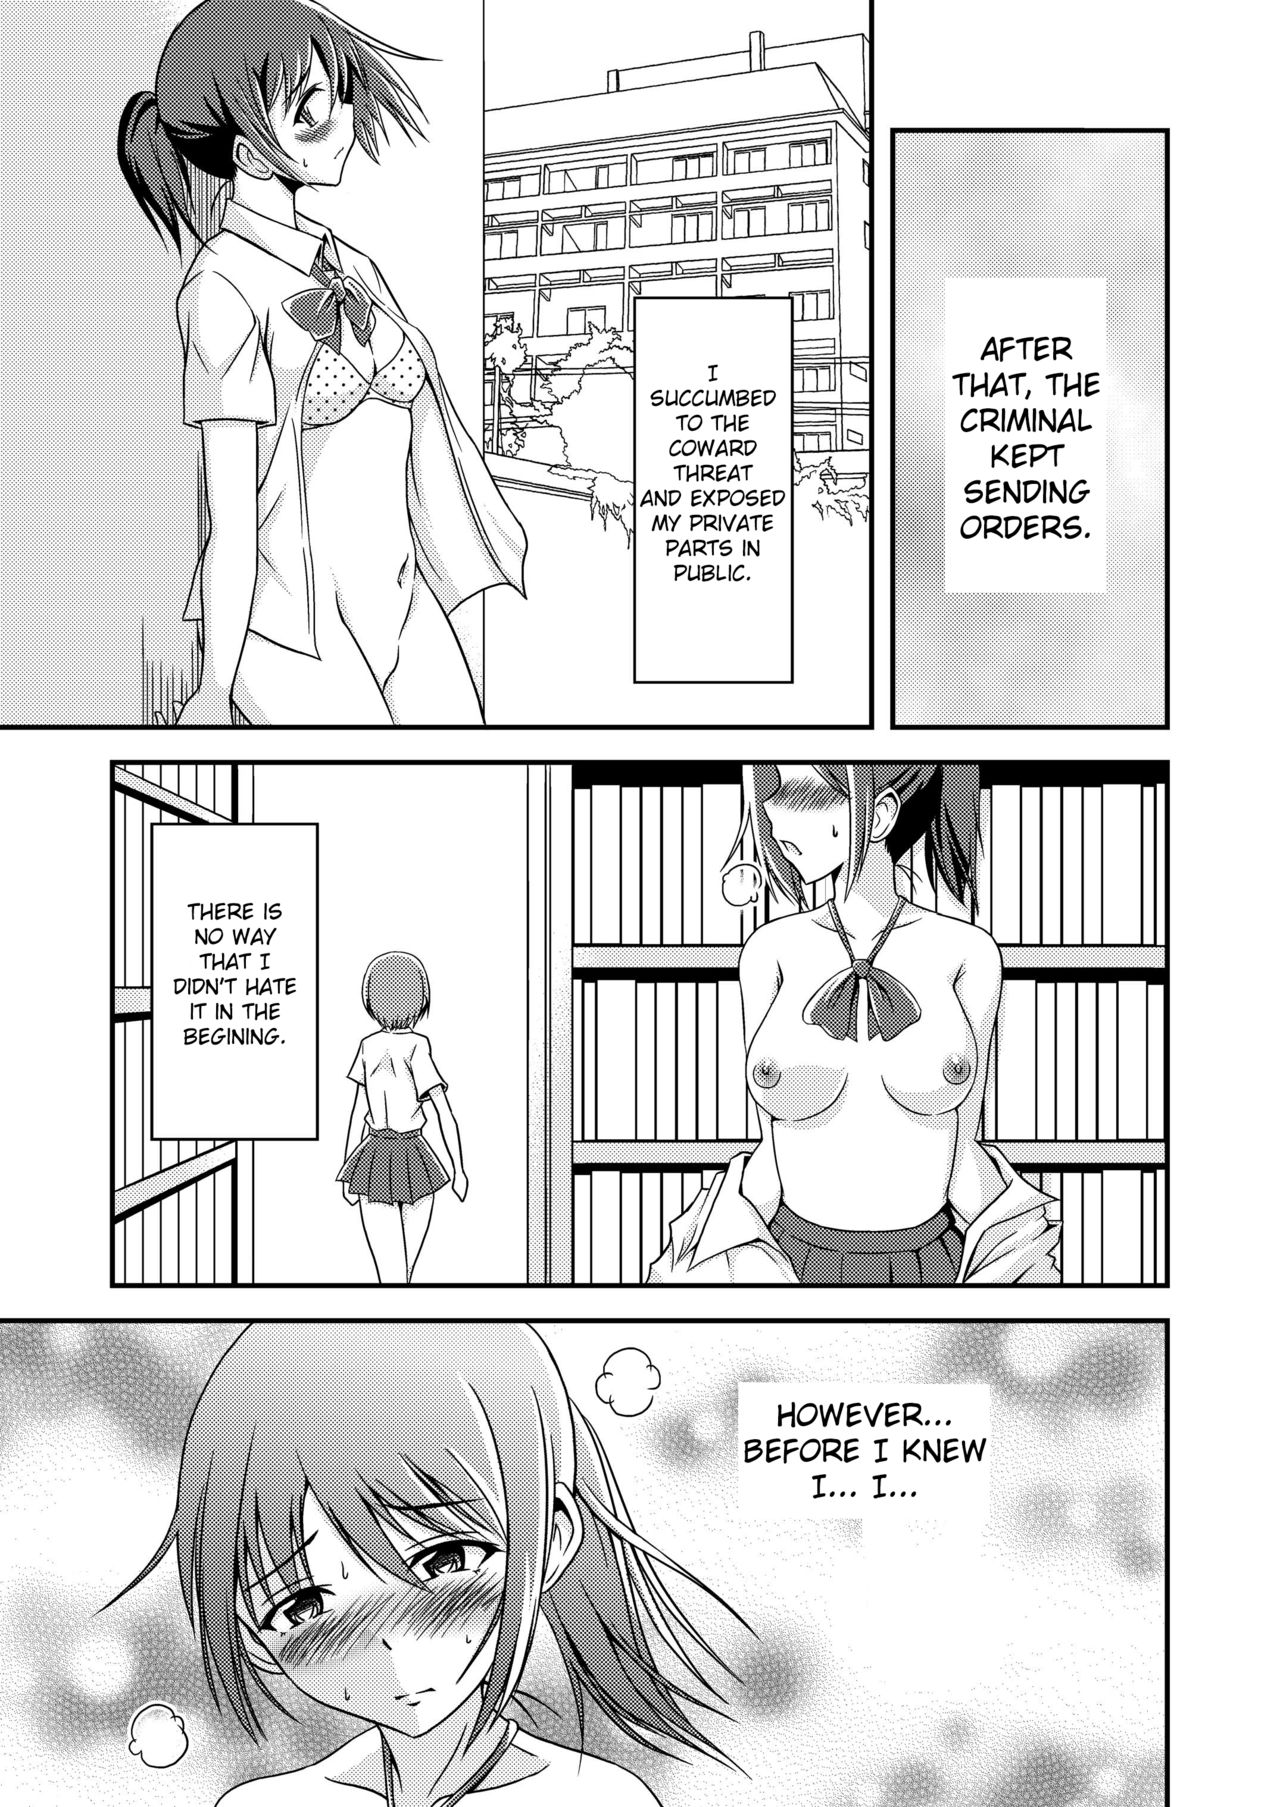 Read Soramune Yuzu Ramune Hentai Roshutsu Friends Abnormal Naked